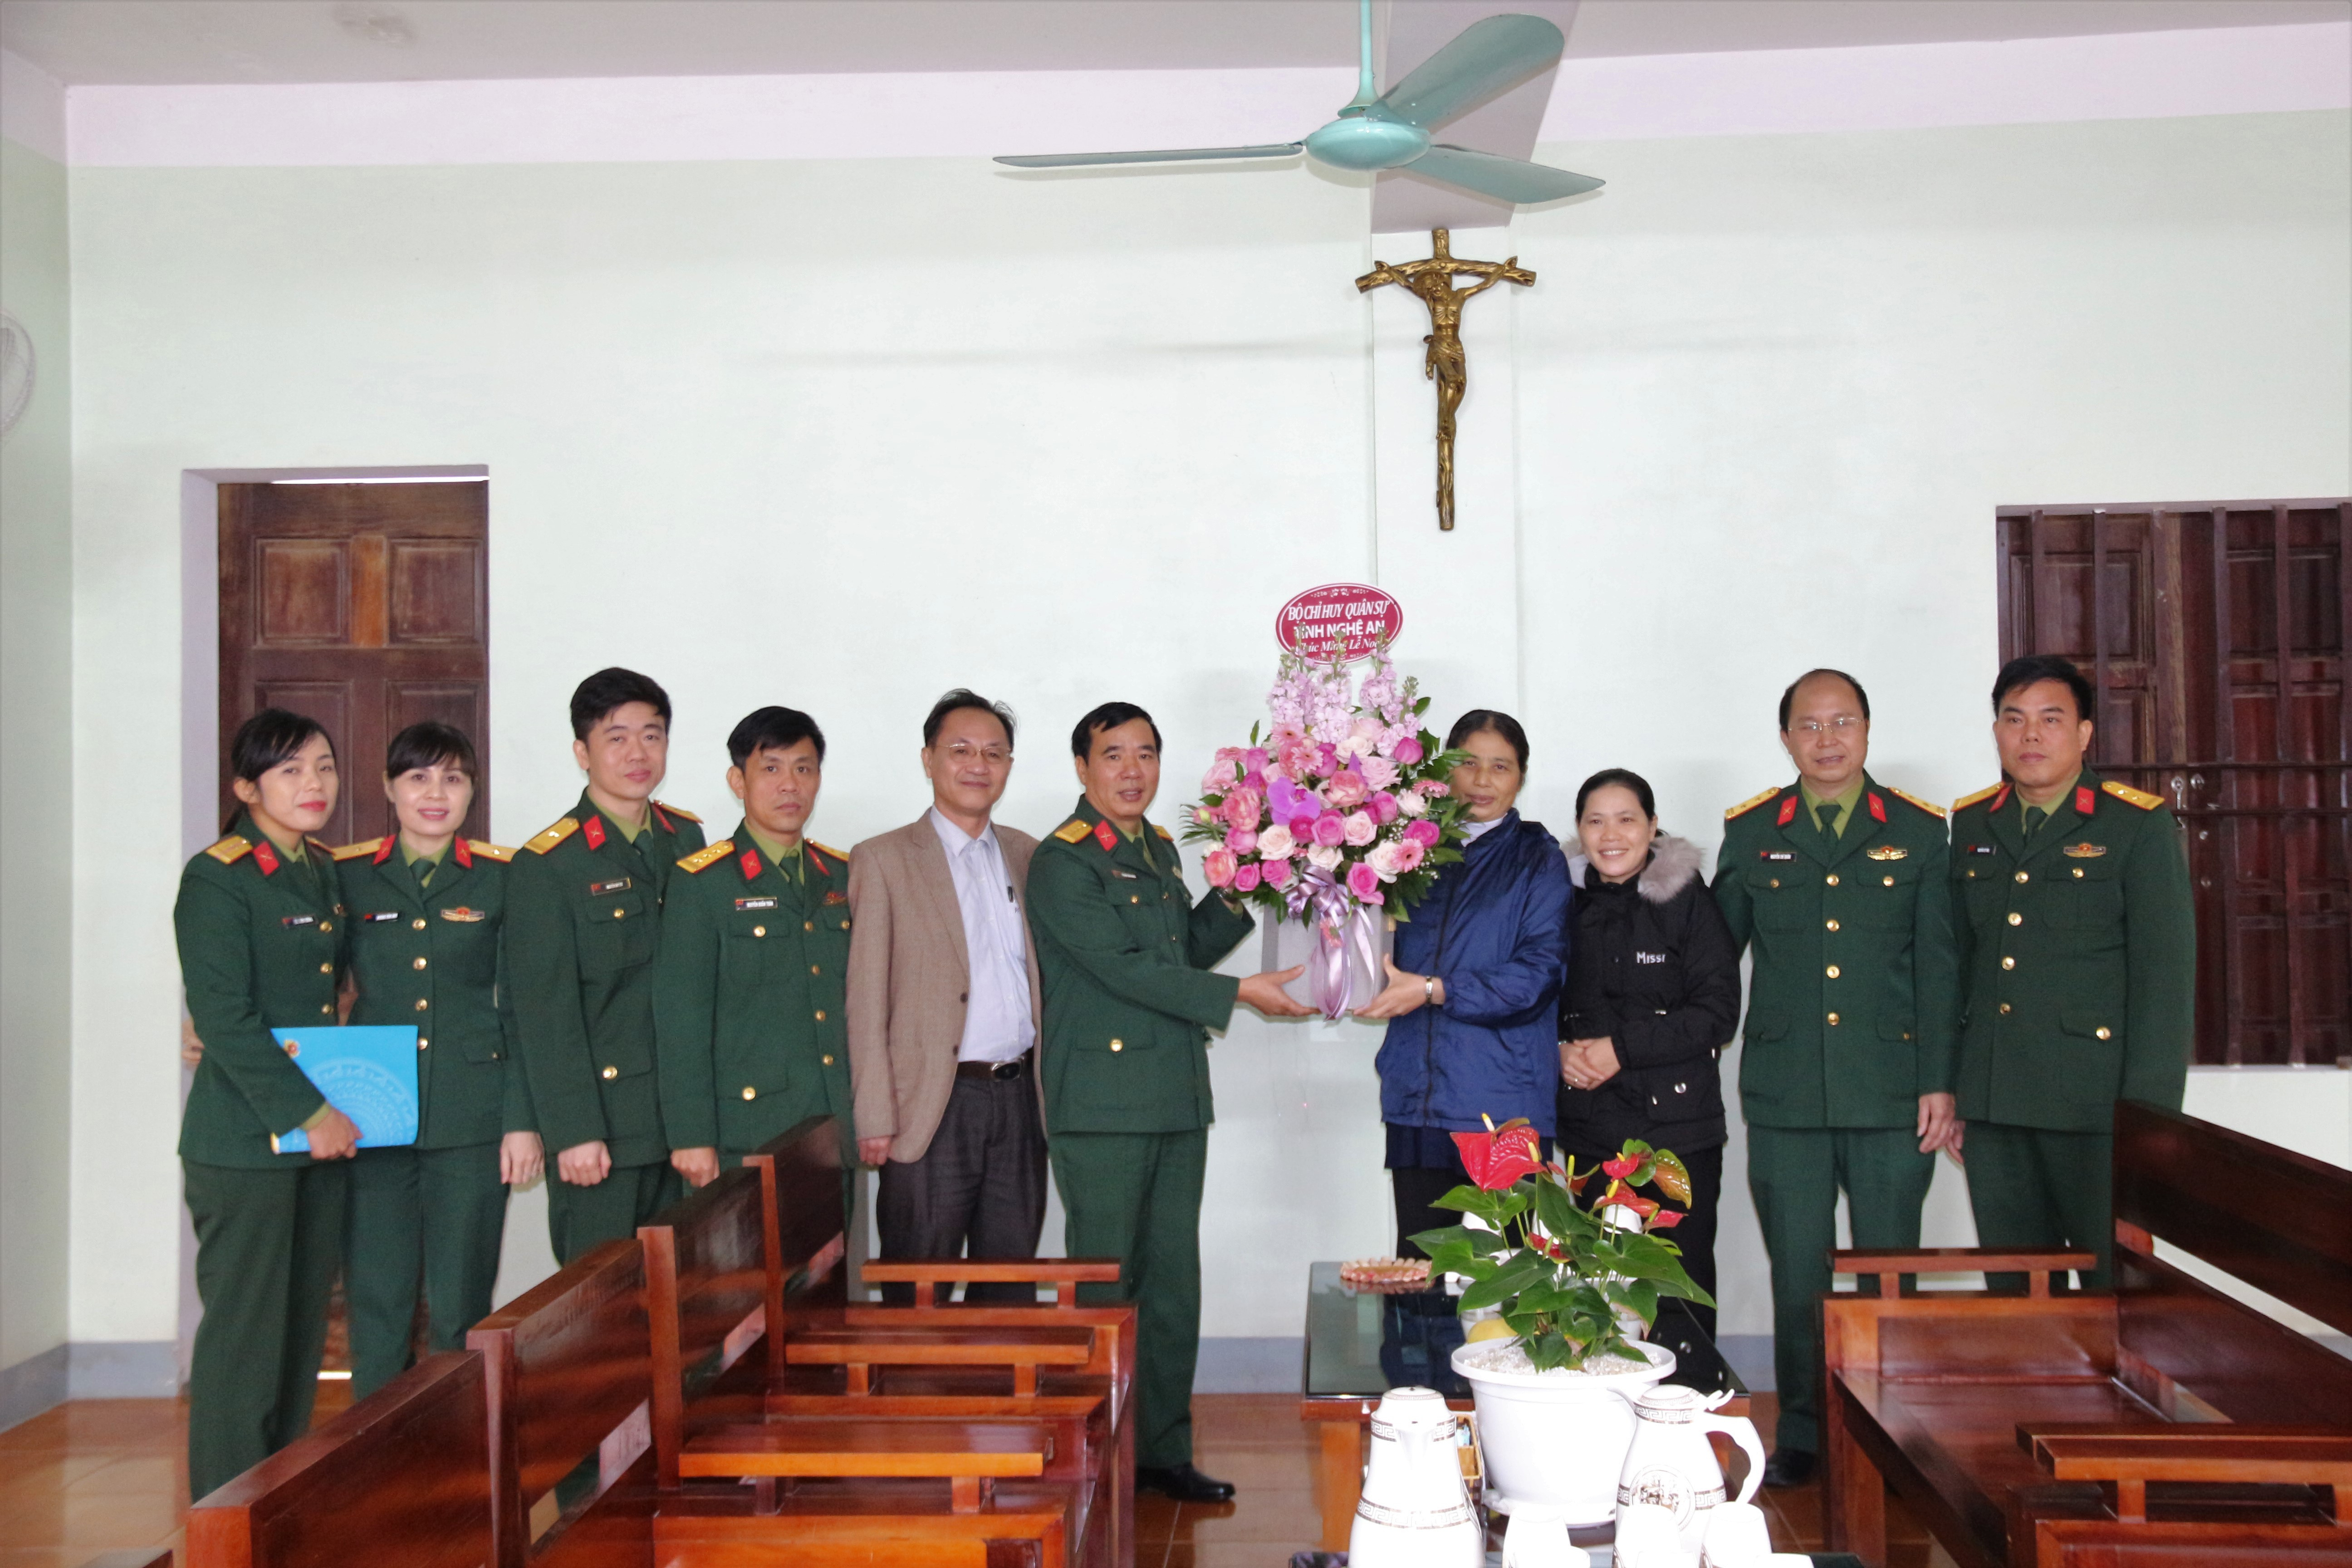 Bộ CHQS tỉnh Nghệ An tặng quà, chúc mừng lễ giáng sinh tại Trung tâm Hội dòng Thừa sai bác ái ở xã Nghi Diên.